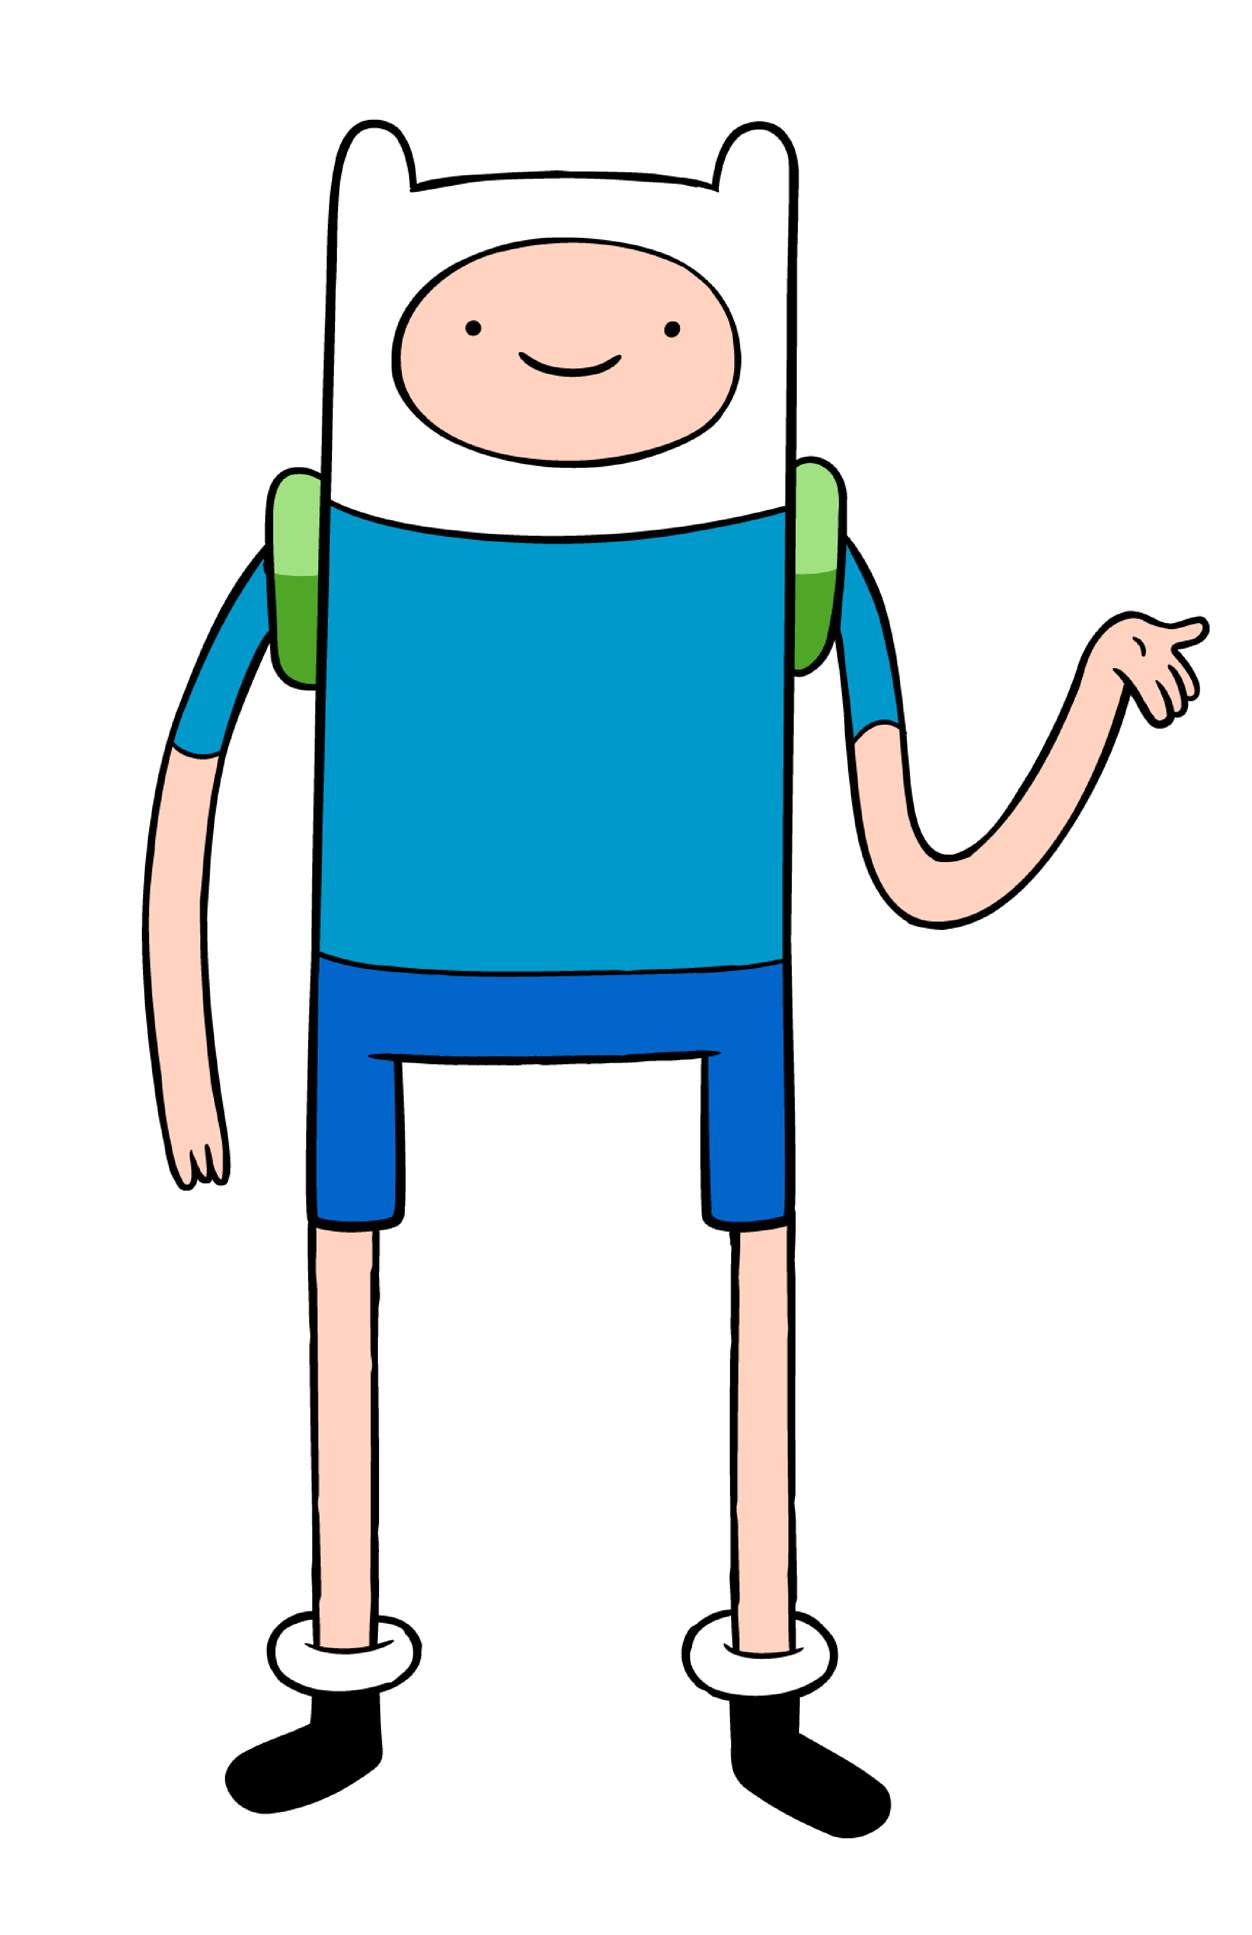 Finn Adventure Time Heroes Wiki Fandom Powered By Wikia